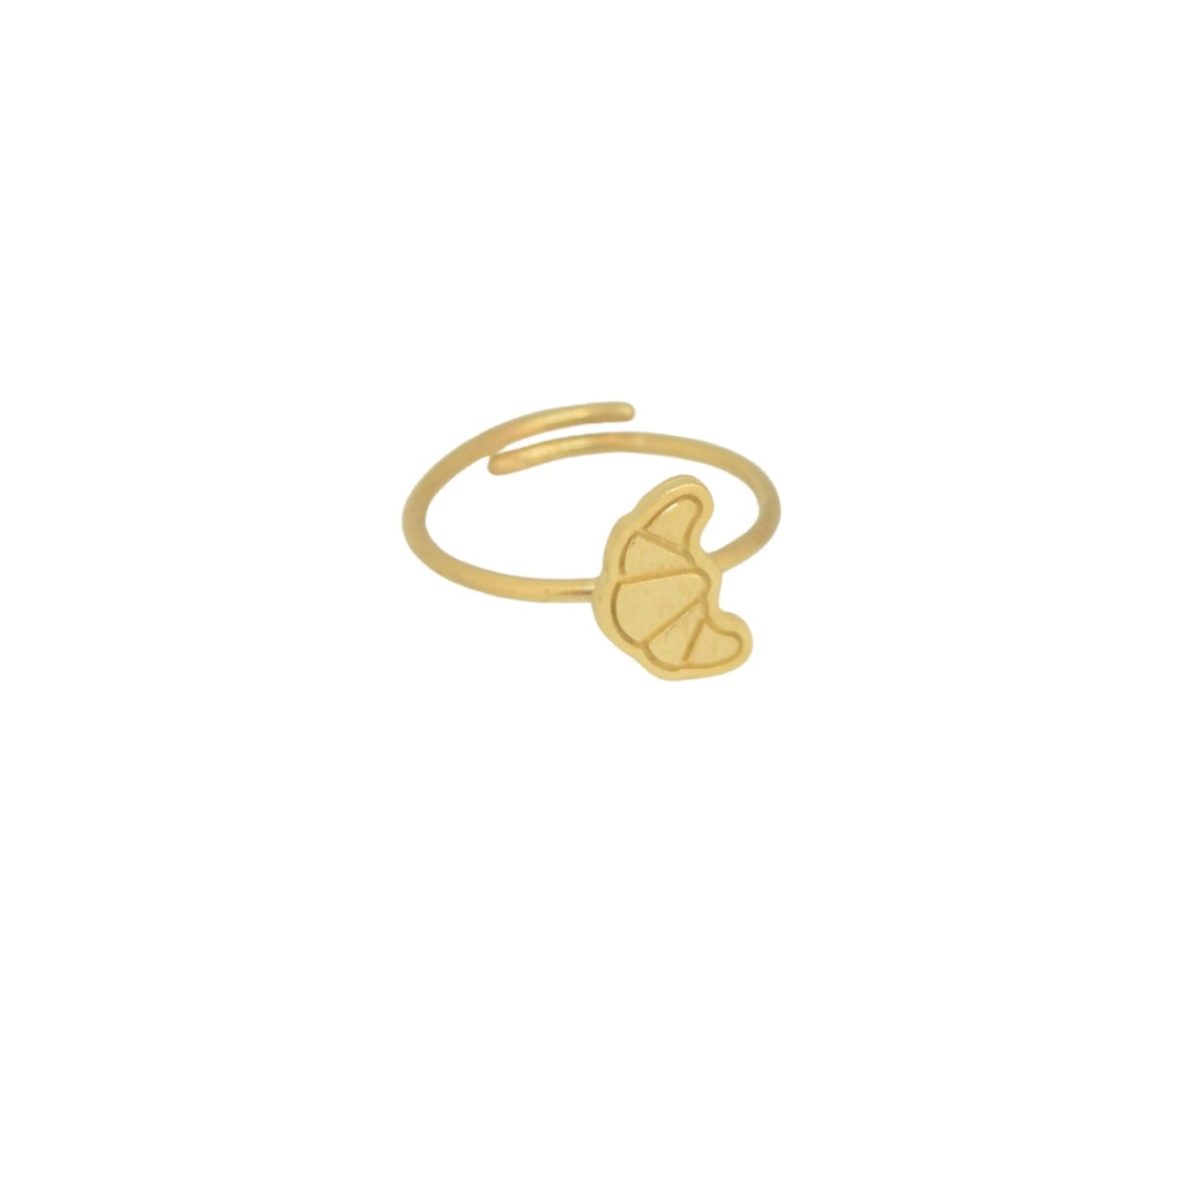 “Κρουασάν” επίχρυσο δαχτυλίδι “Κρουασάν” επίχρυσο δαχτυλίδι “Κρουασάν” επίχρυσο δαχτυλίδι 4